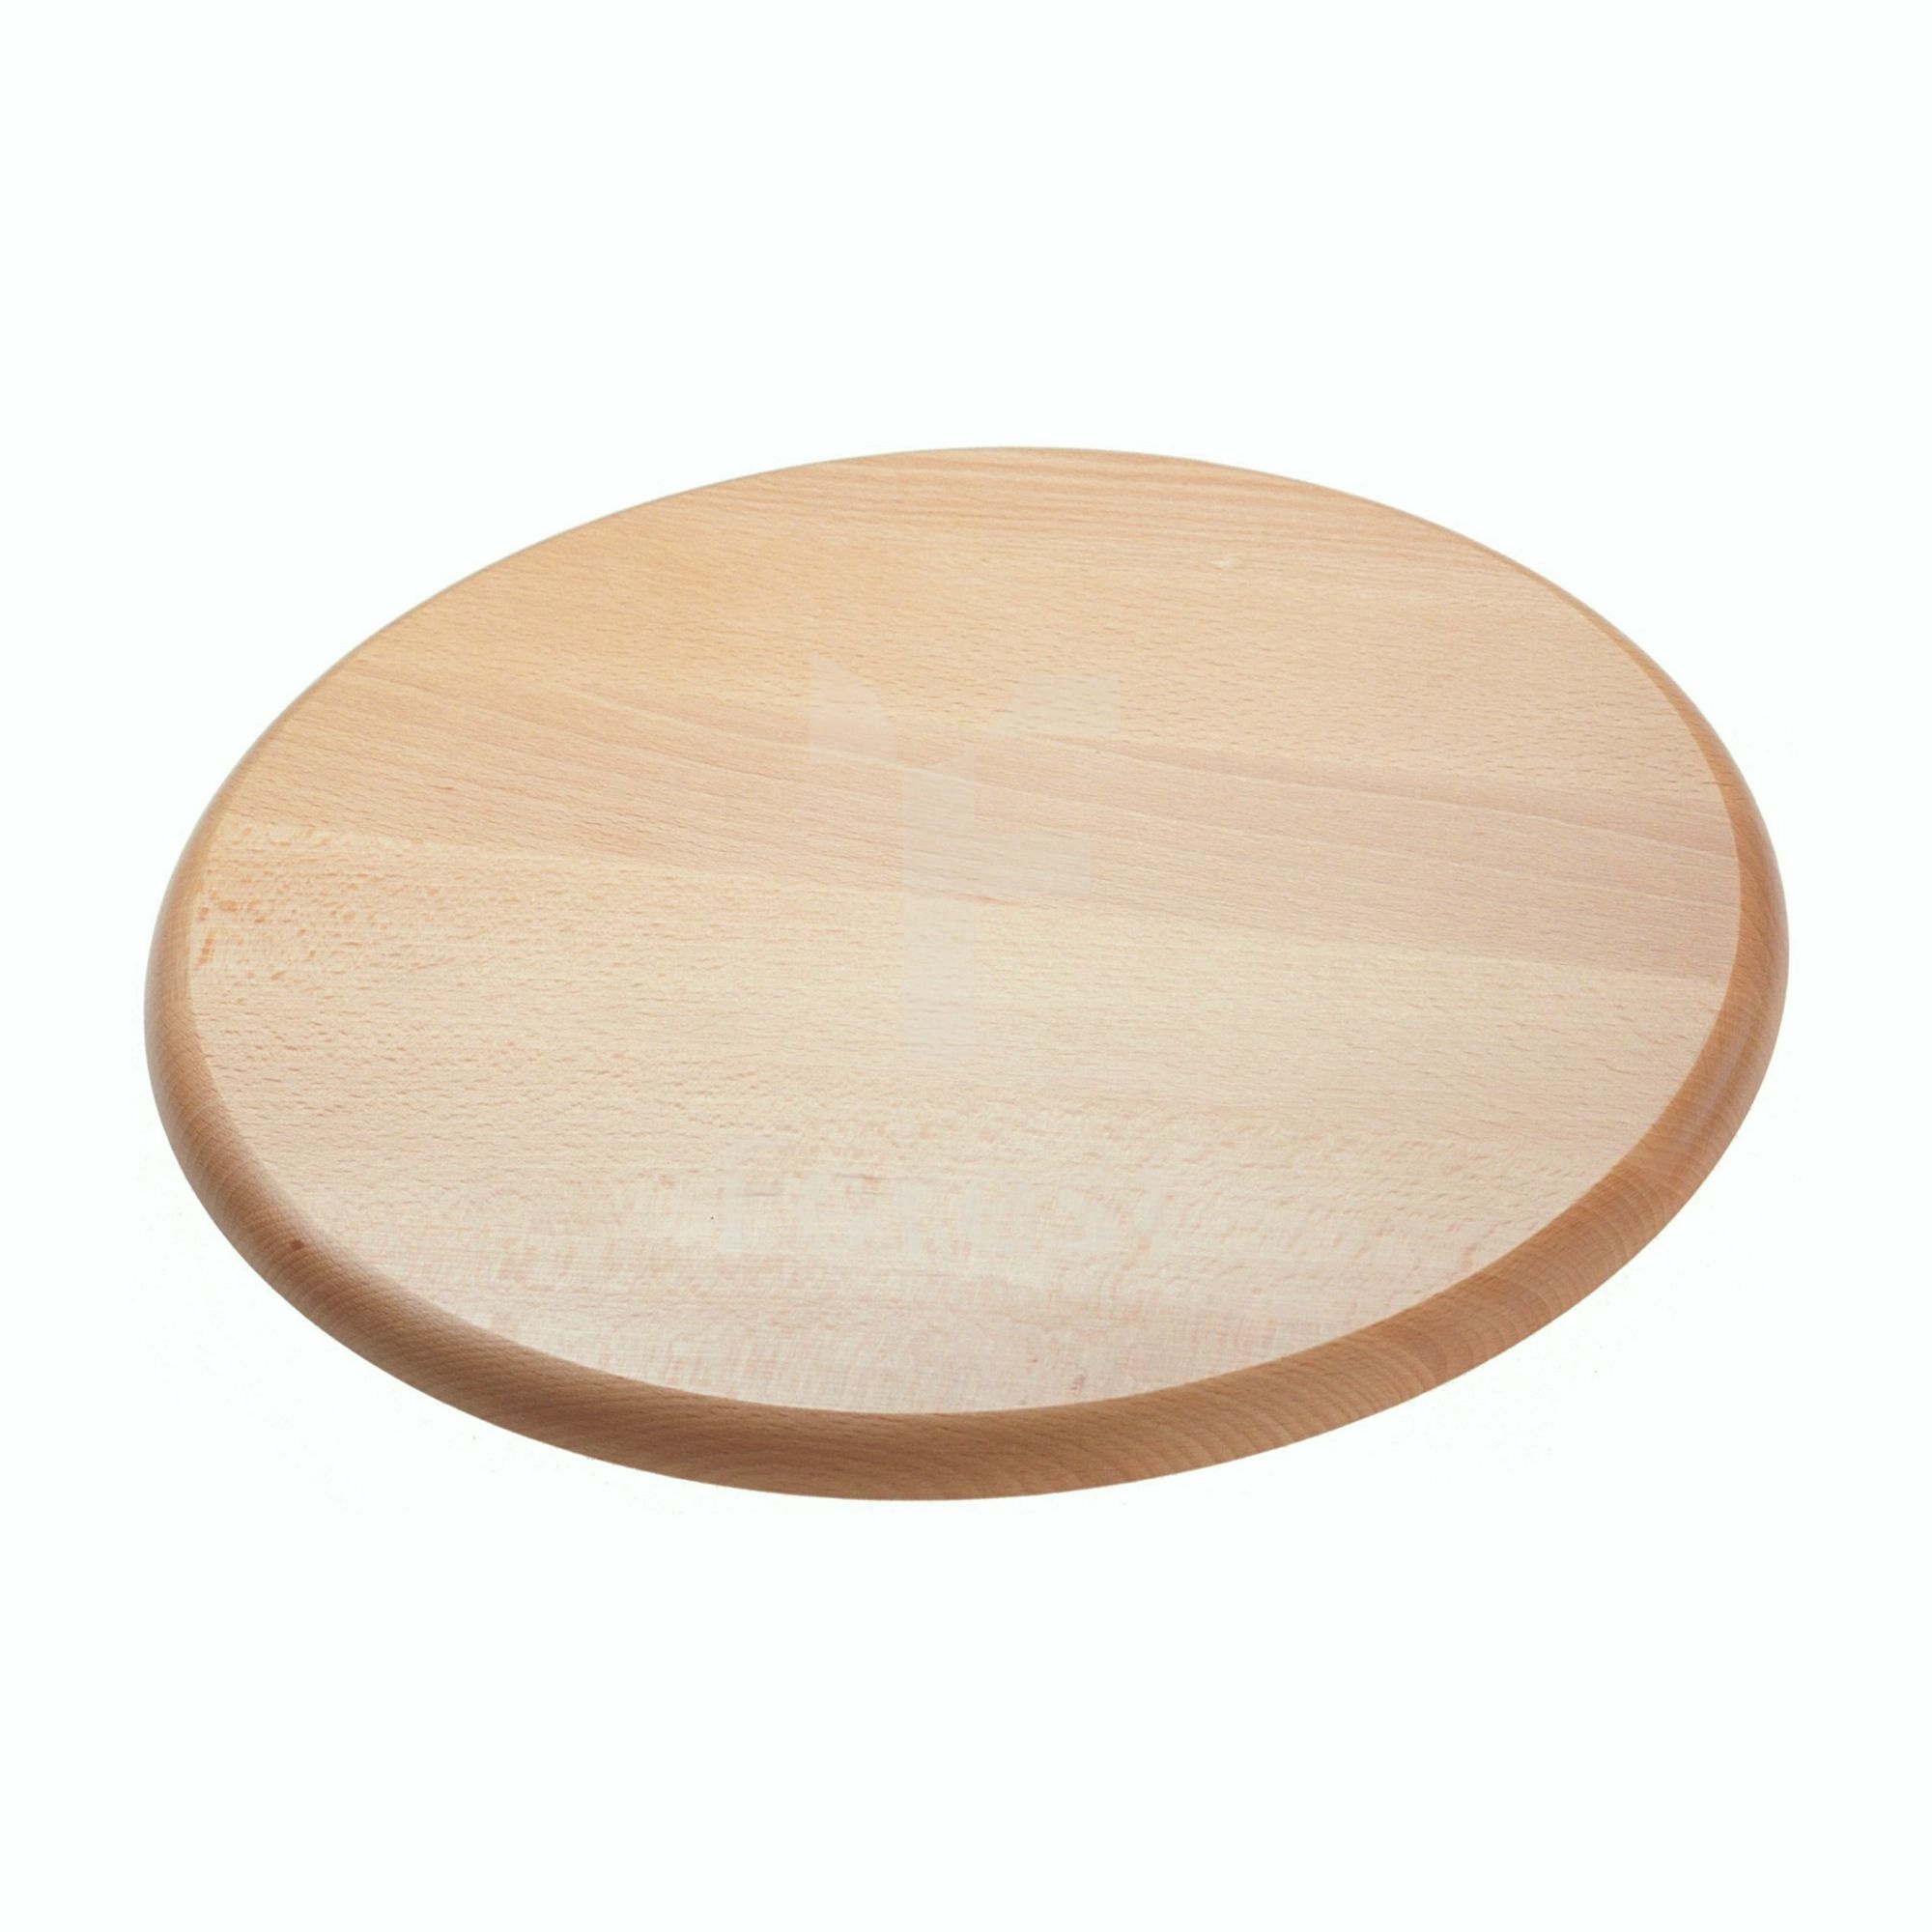 Drewniana deska - talerz obrotowy  DO-T   35 cm